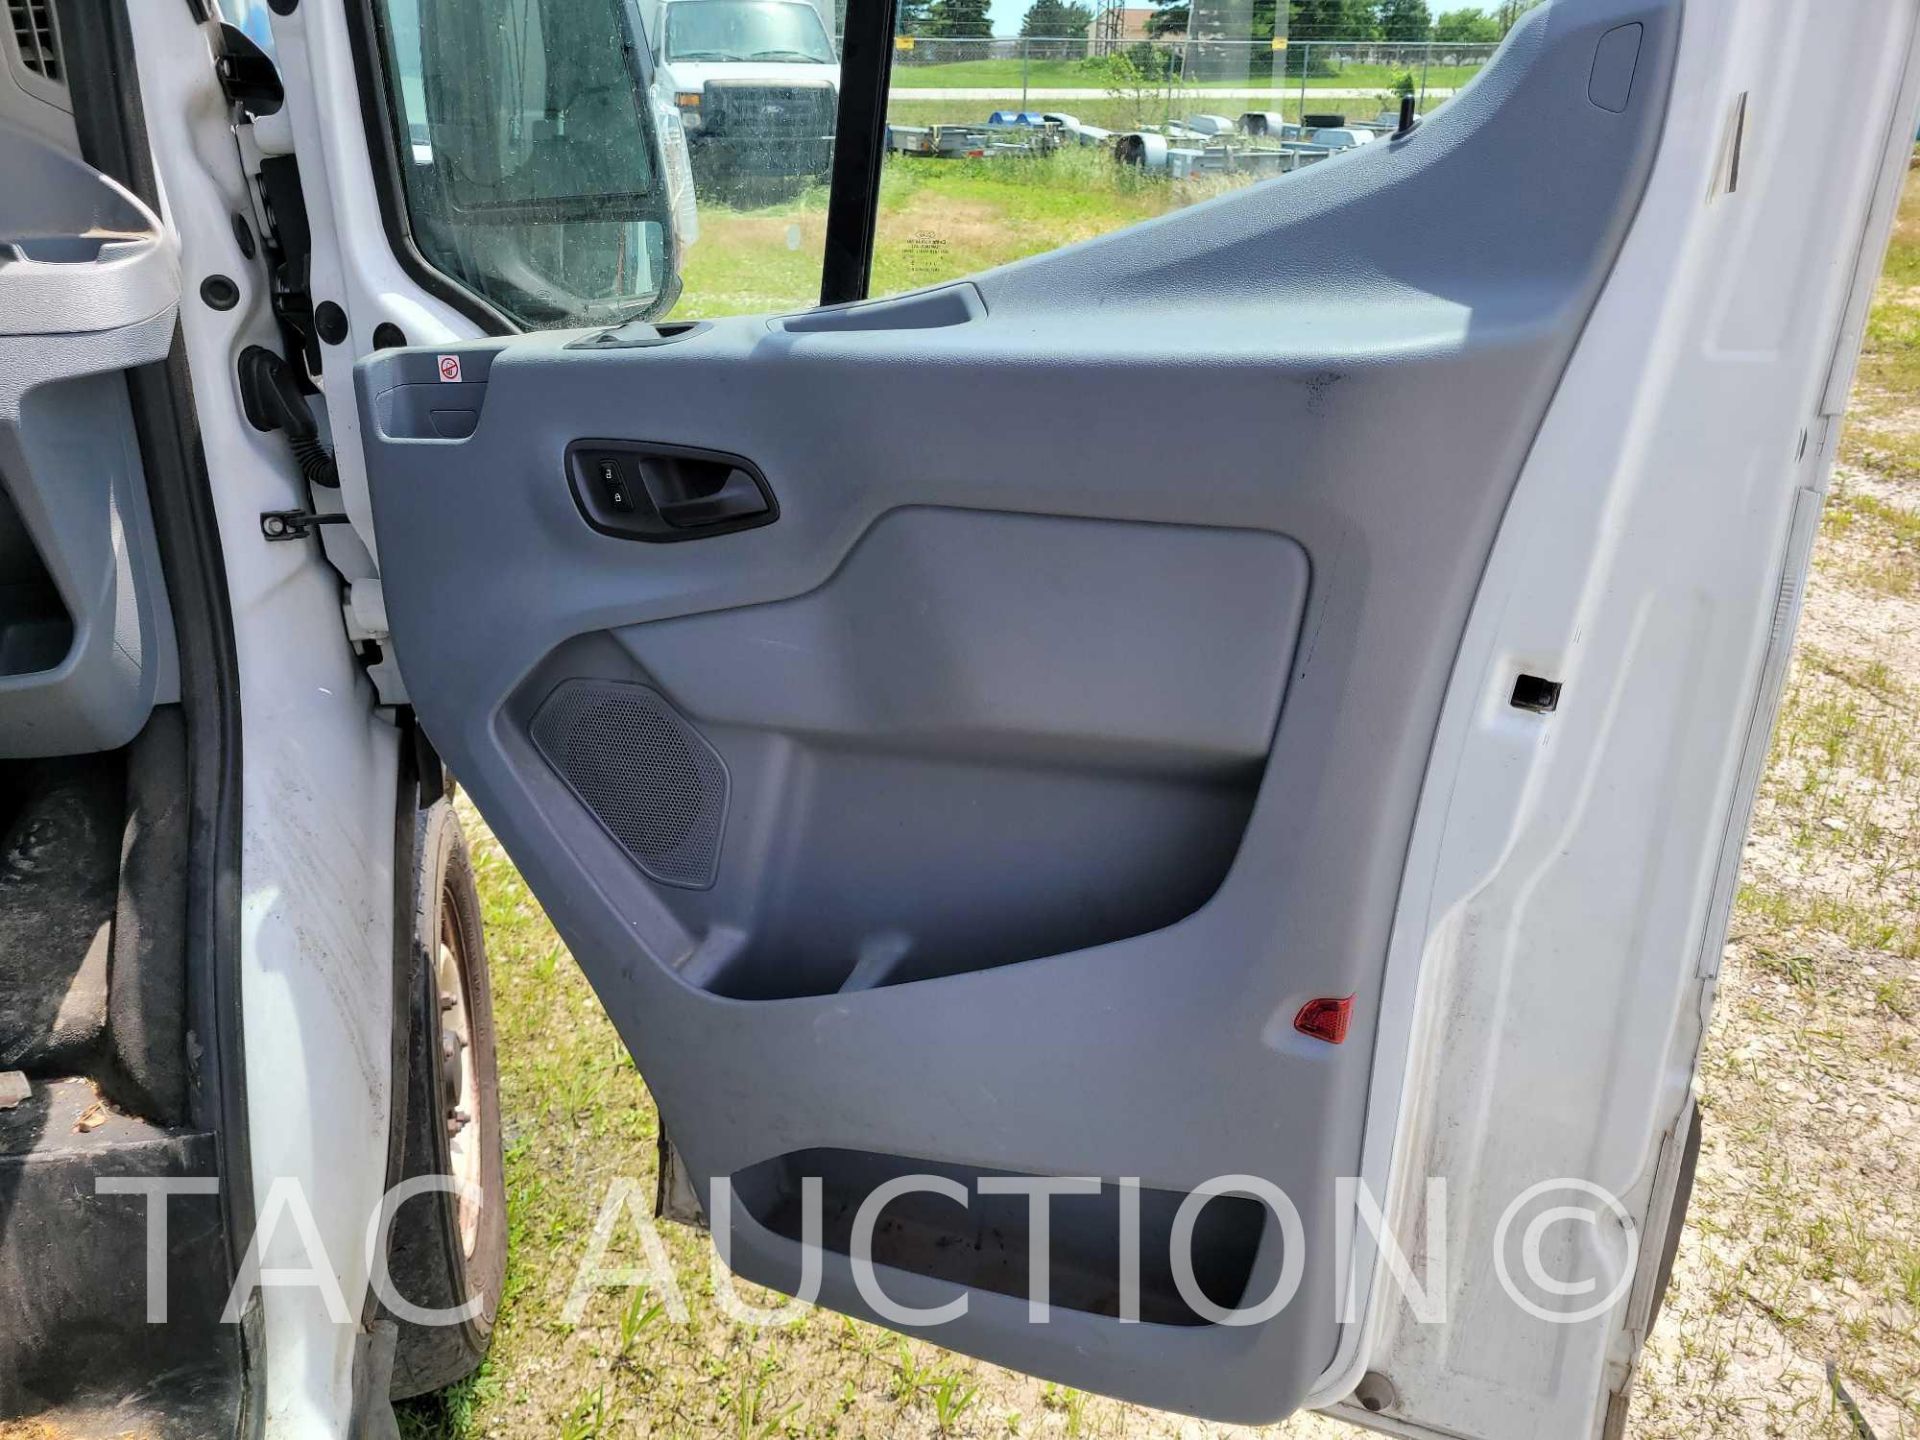 2019 Ford Transit 150 Cargo Van - Image 19 of 49